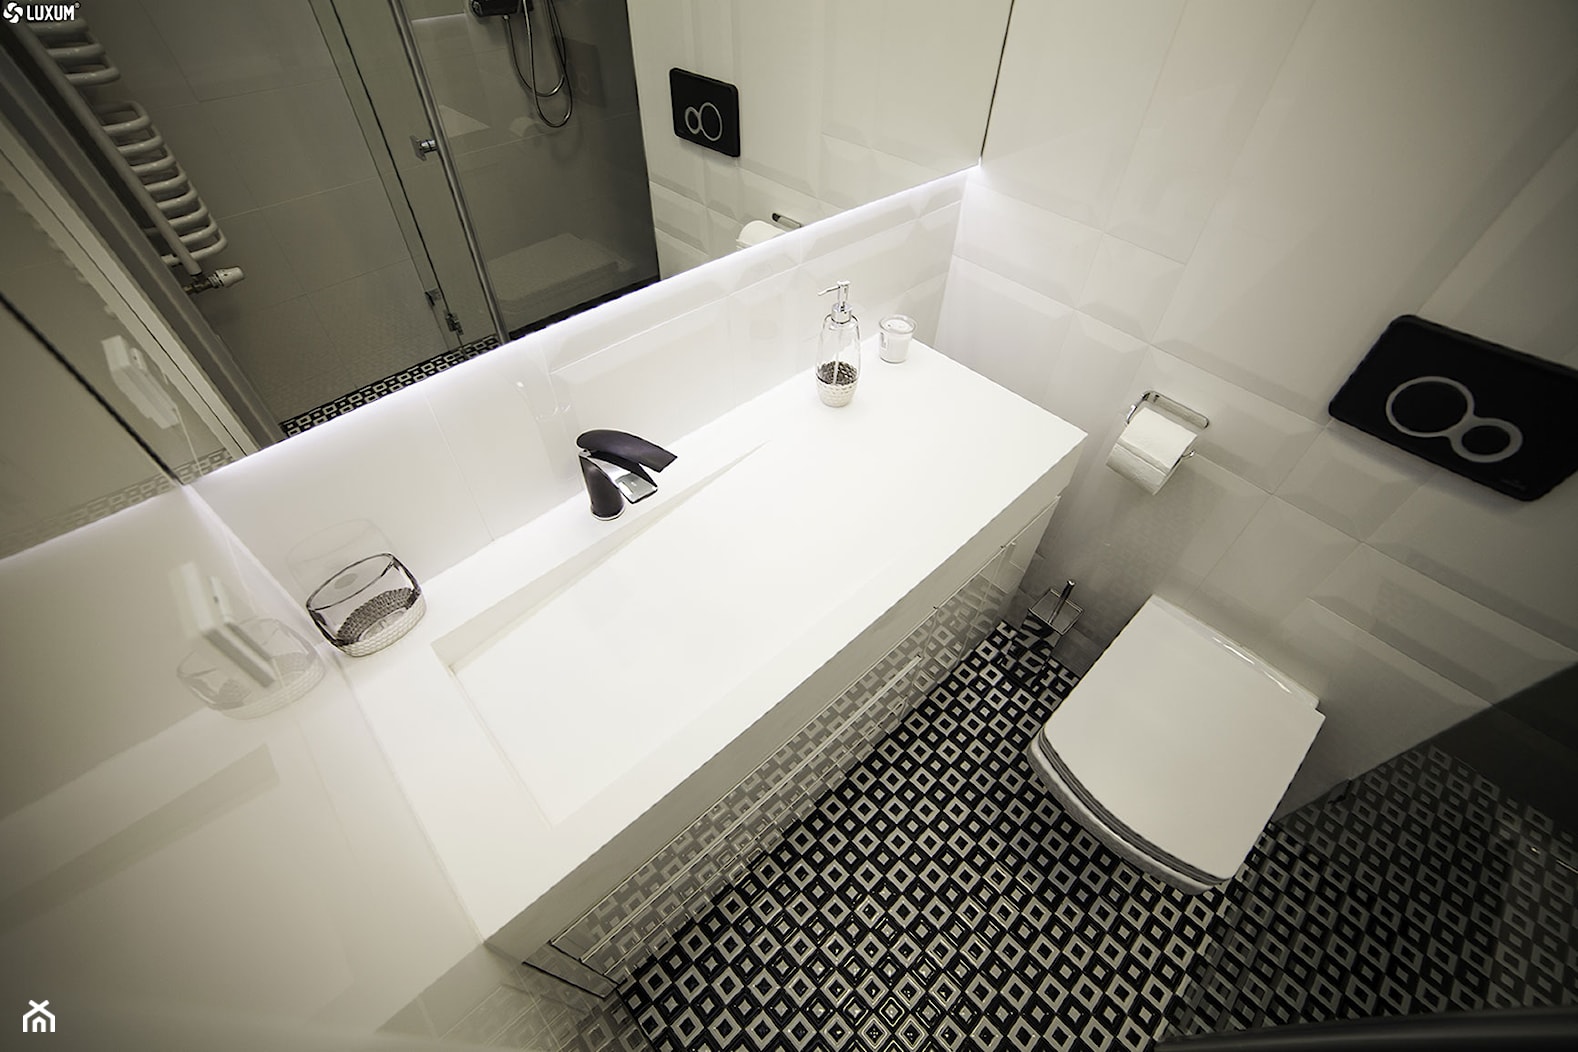 Prostokątna umywalka z odpływem liniowym od Luxum. - Mała bez okna łazienka, styl skandynawski - zdjęcie od Luxum - Homebook